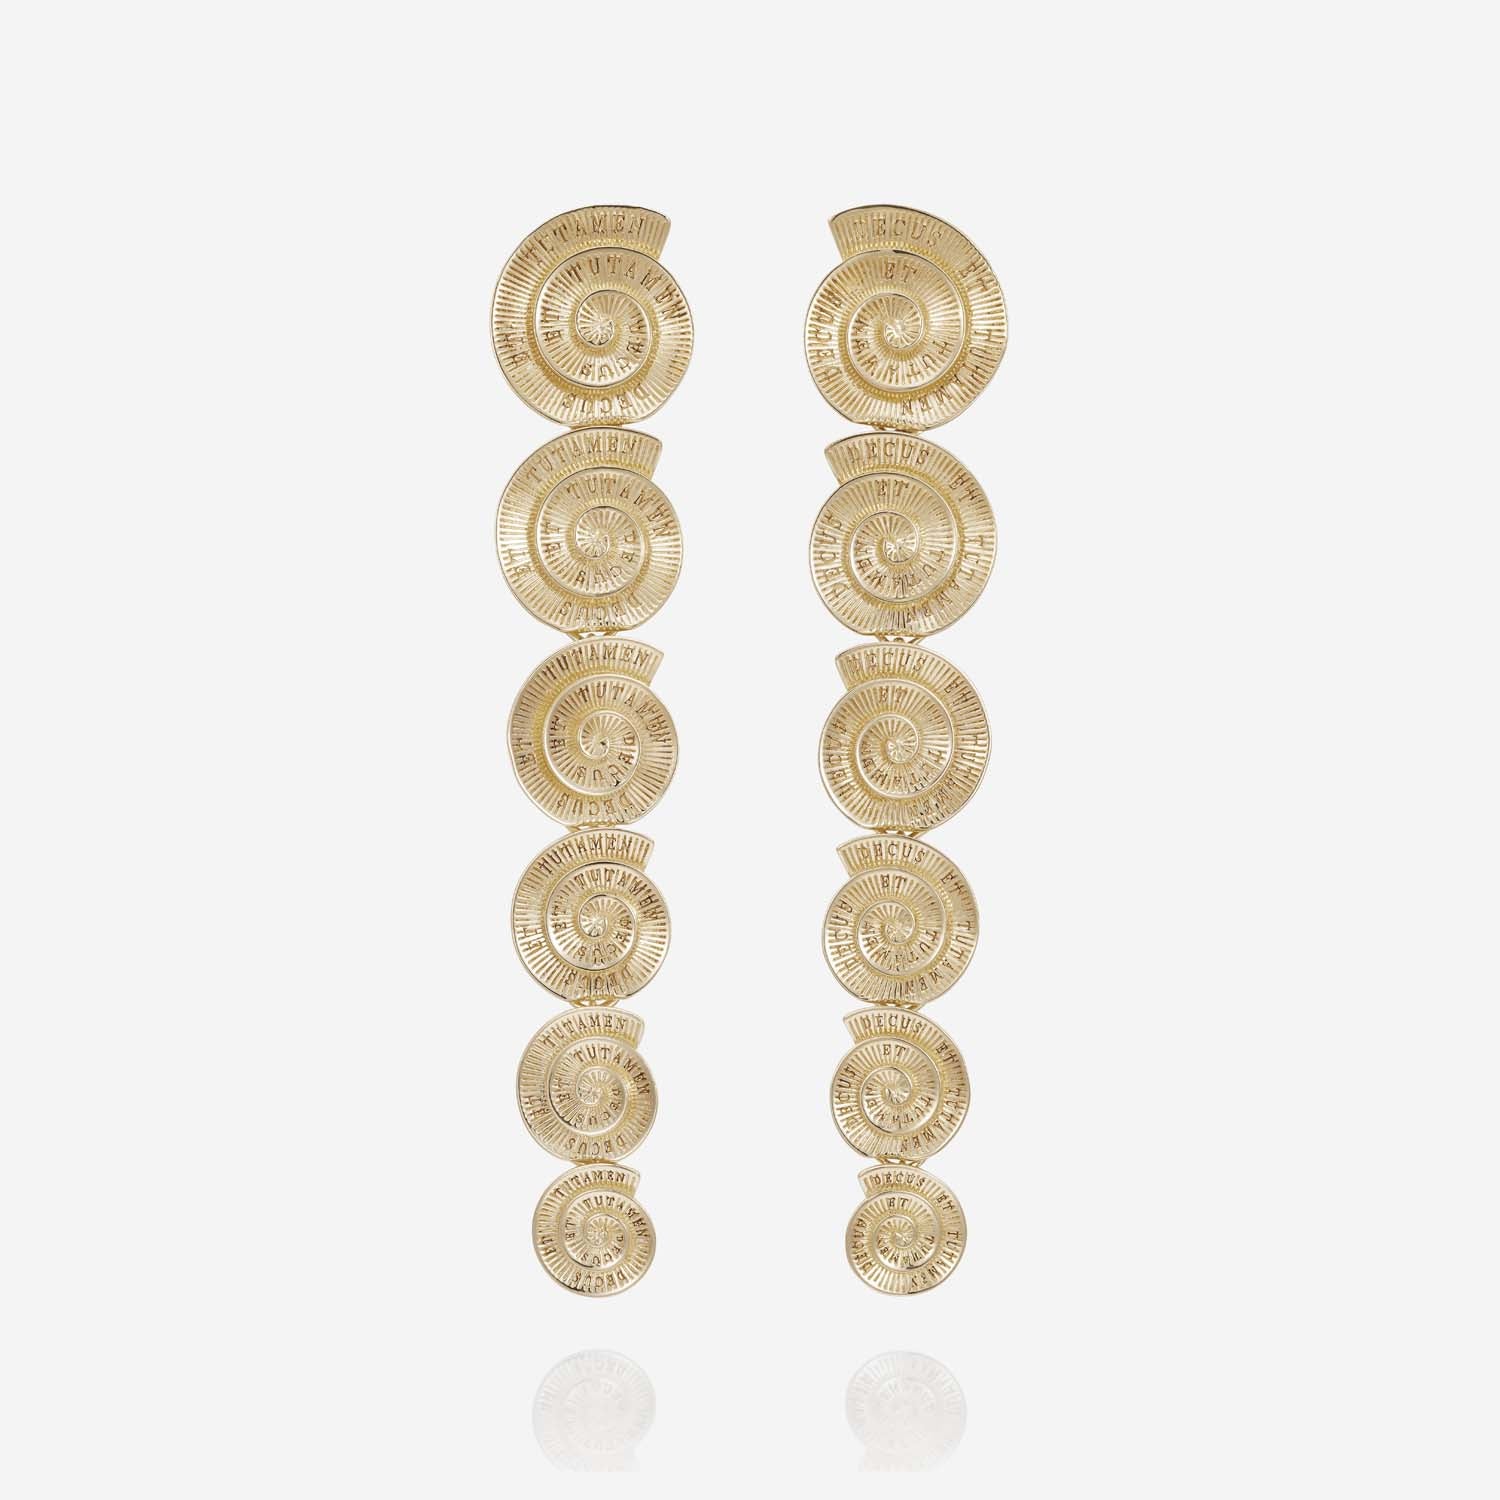 886 Royal Mint Earrings Tutamen Spiral Drop Earrings 9ct Yellow Gold